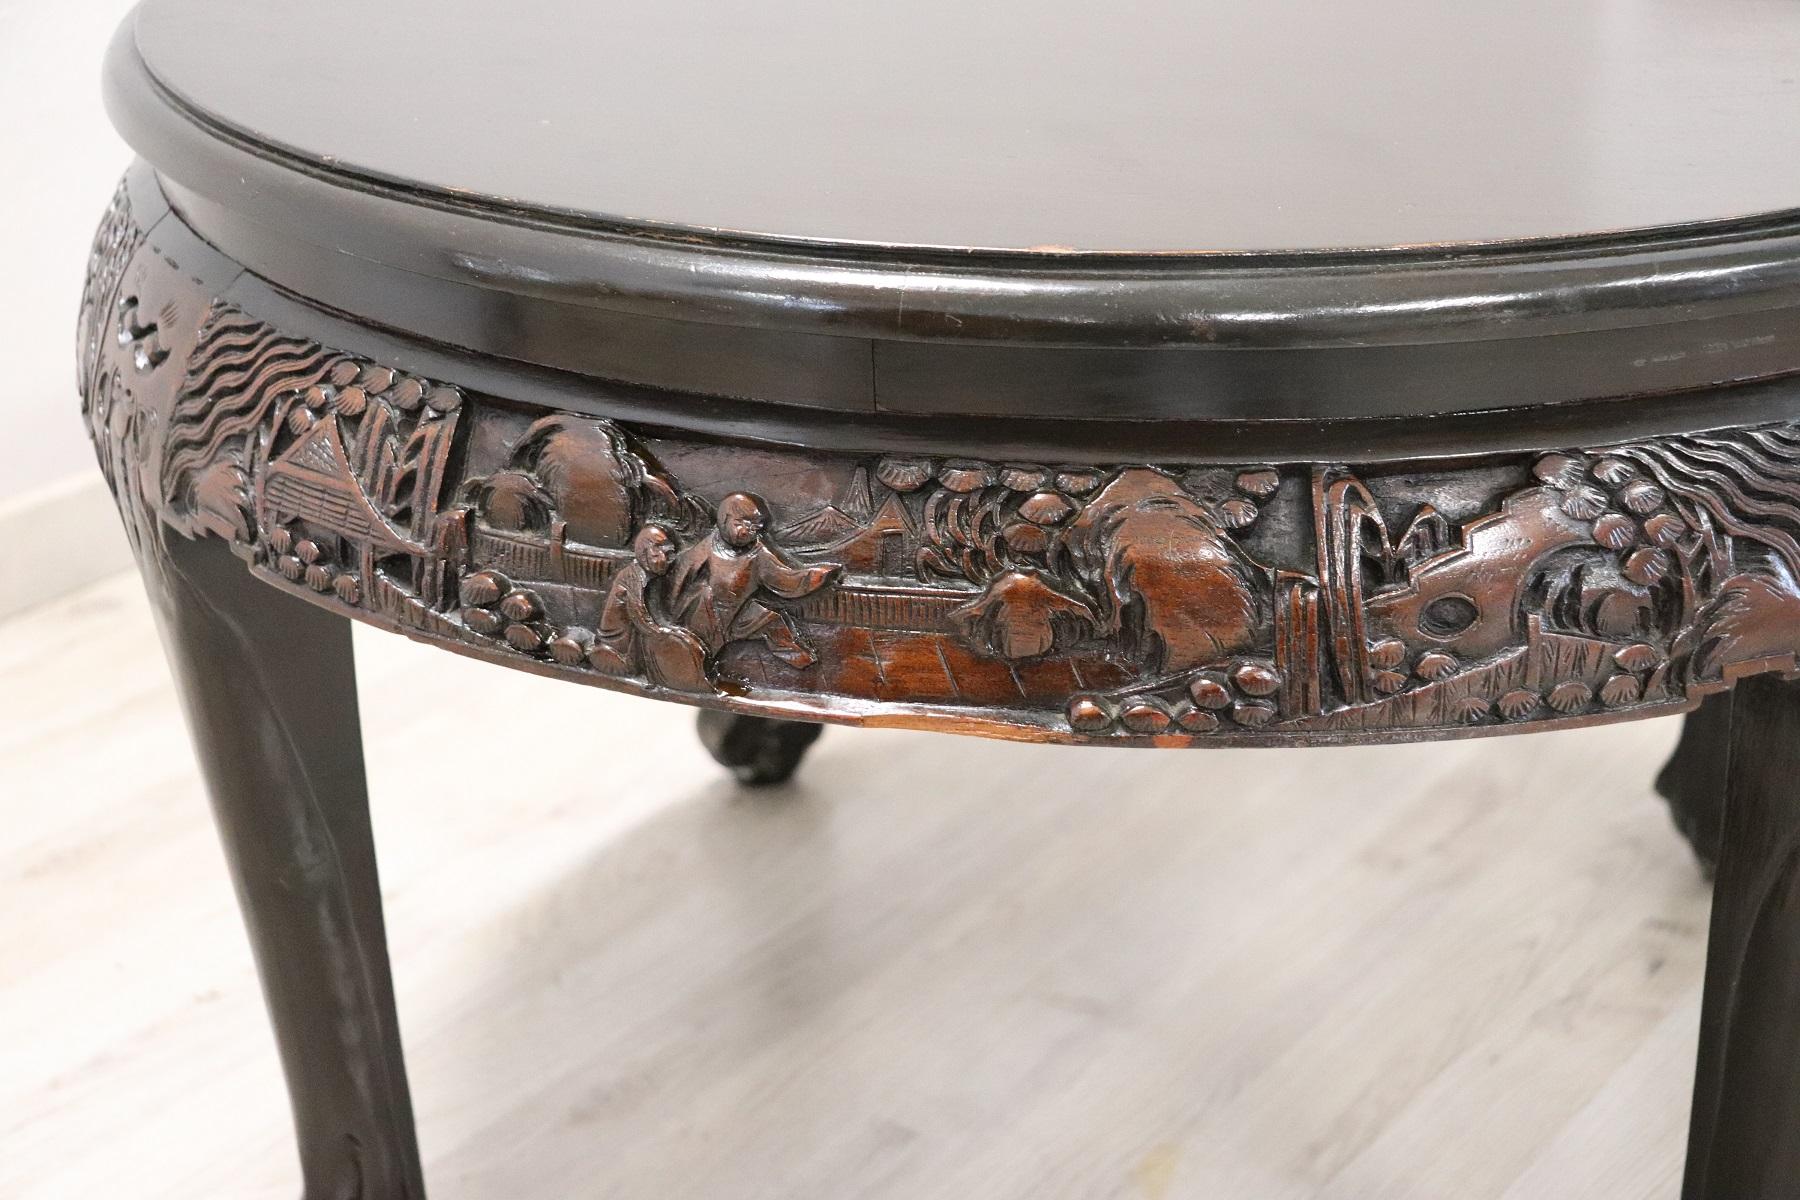 Début du 20e siècle, Angleterre, belle table ronde de grand canapé. En bois sculpté avec un décor raffiné de chinoiserie. Des jambes particulièrement élégantes.
 